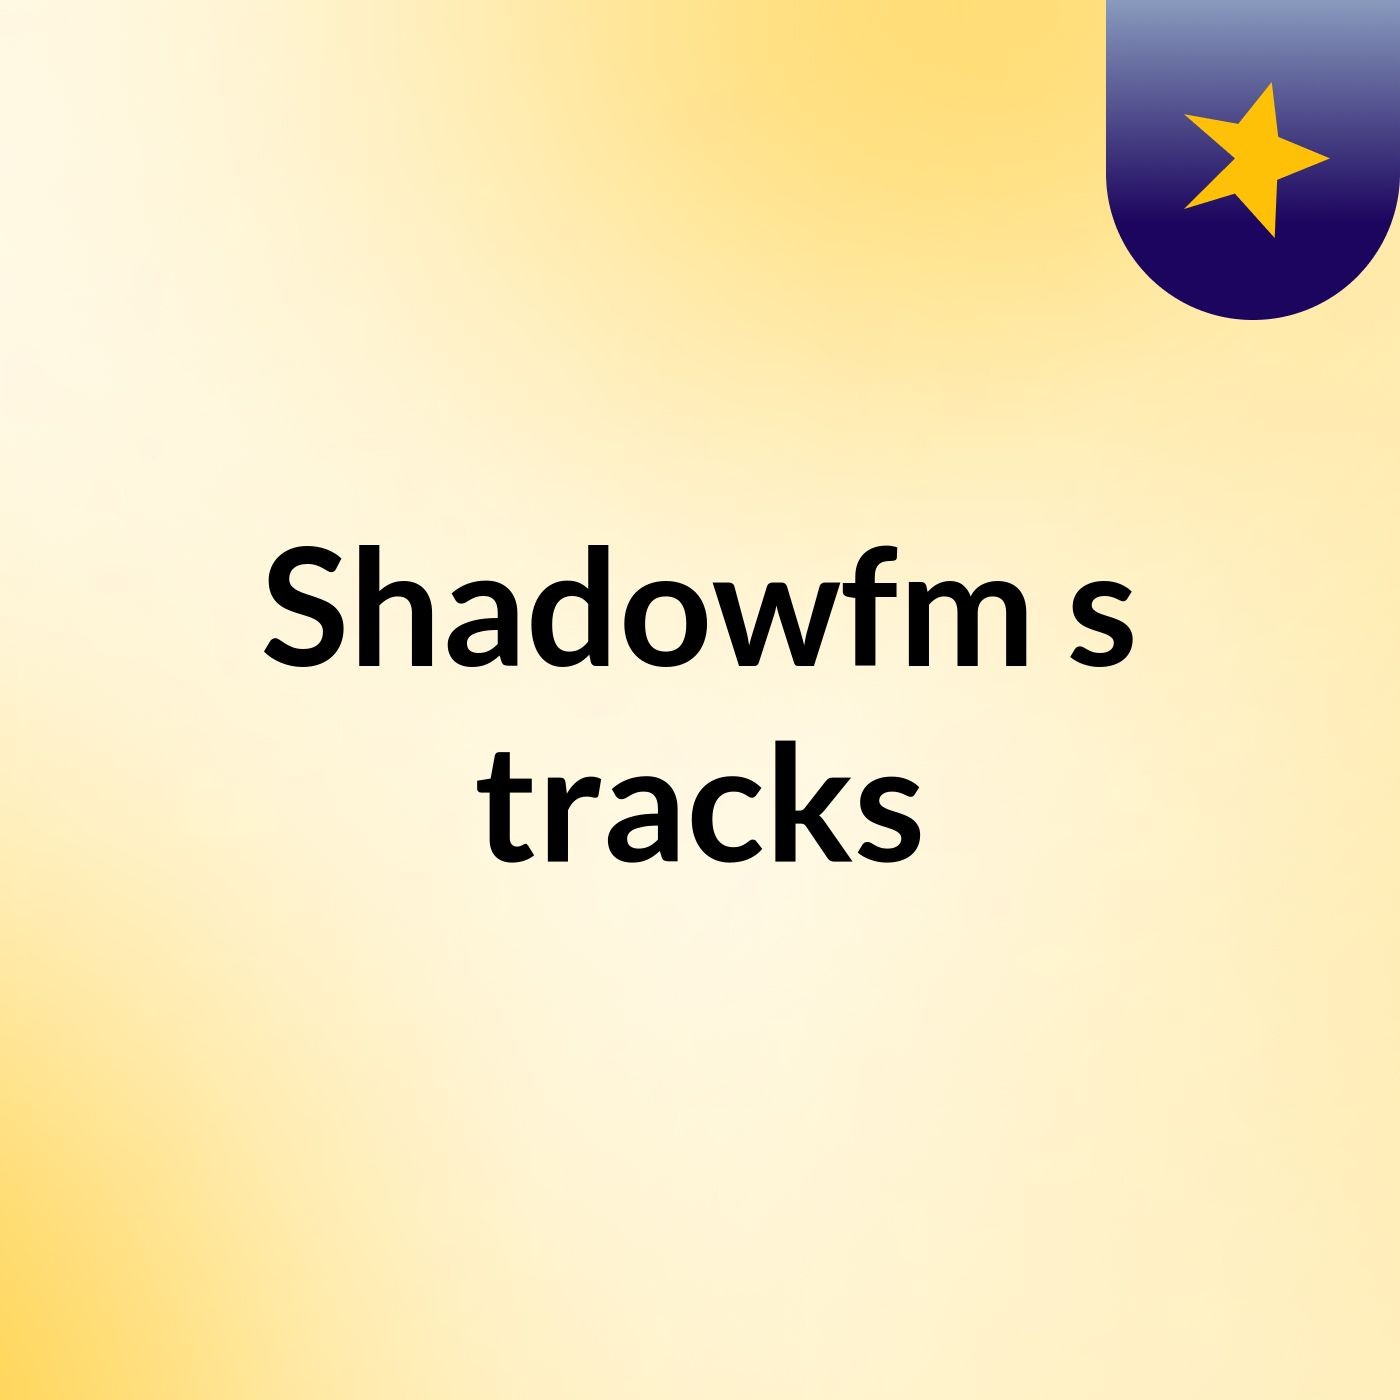 Shadowfm's tracks